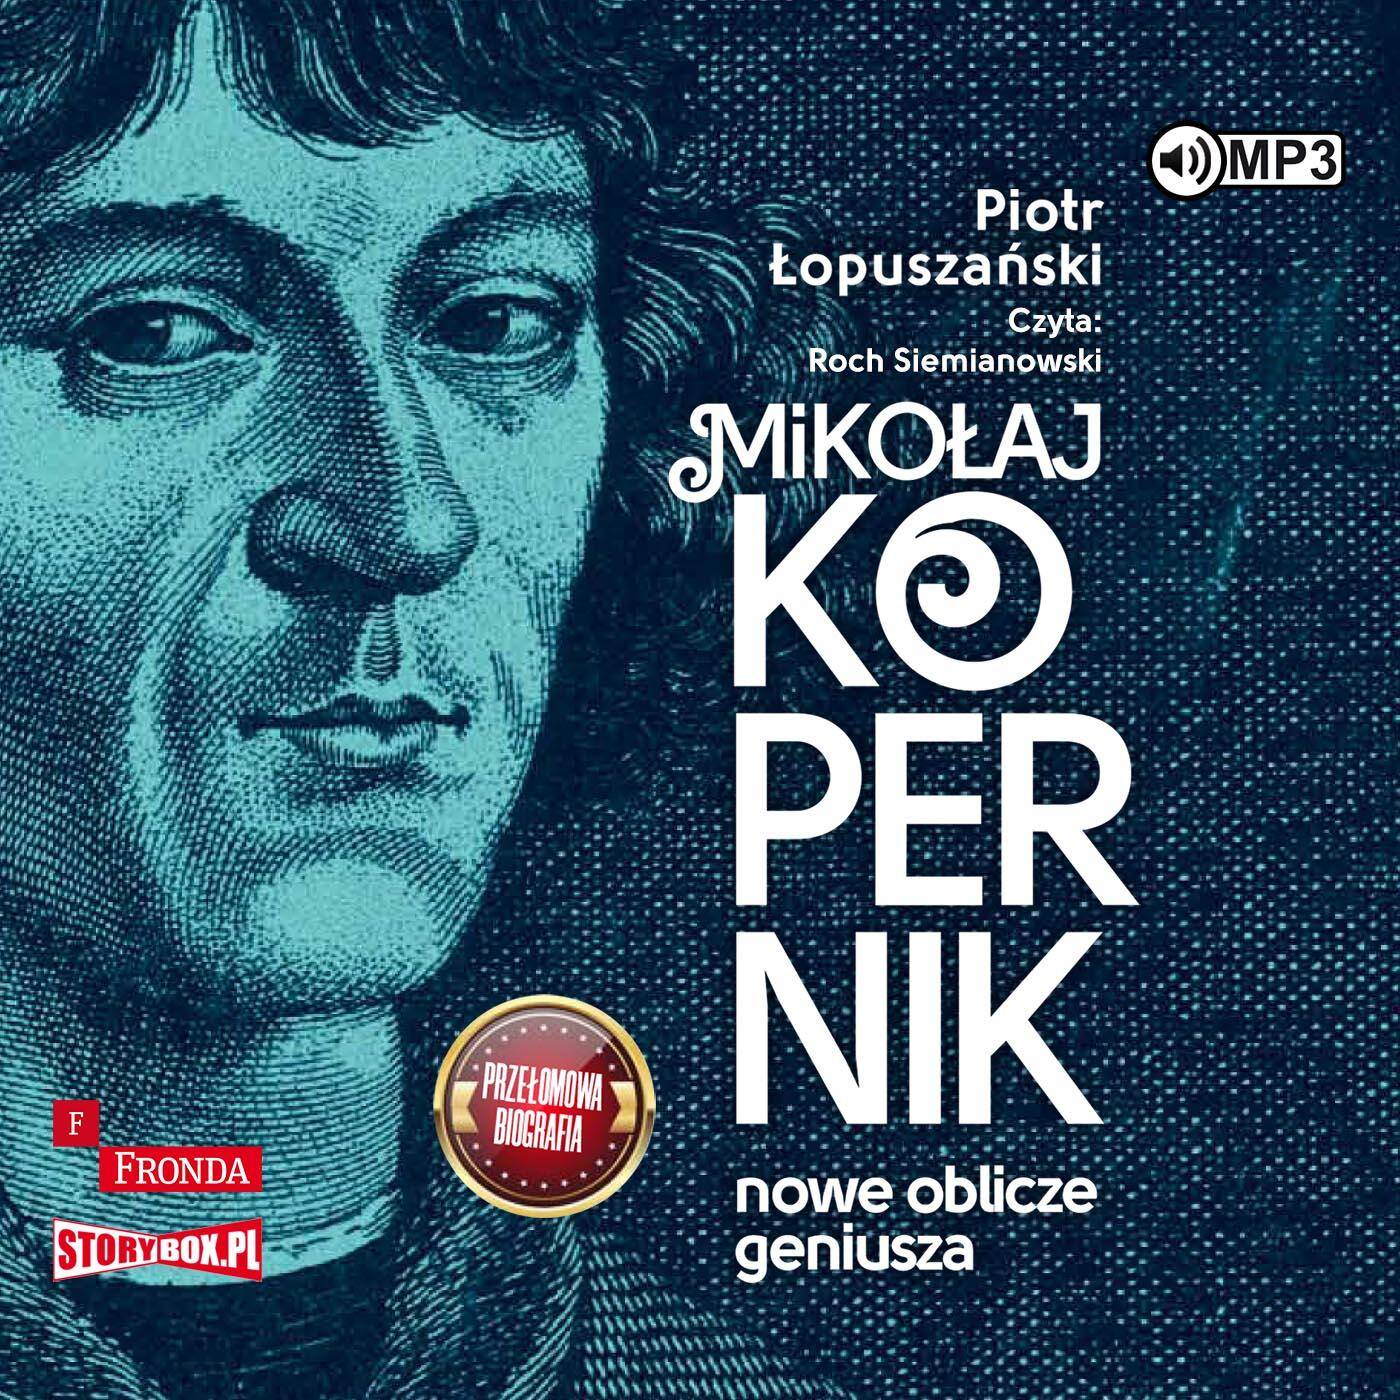 CD MP3 Mikołaj Kopernik. Nowe oblicze geniusza